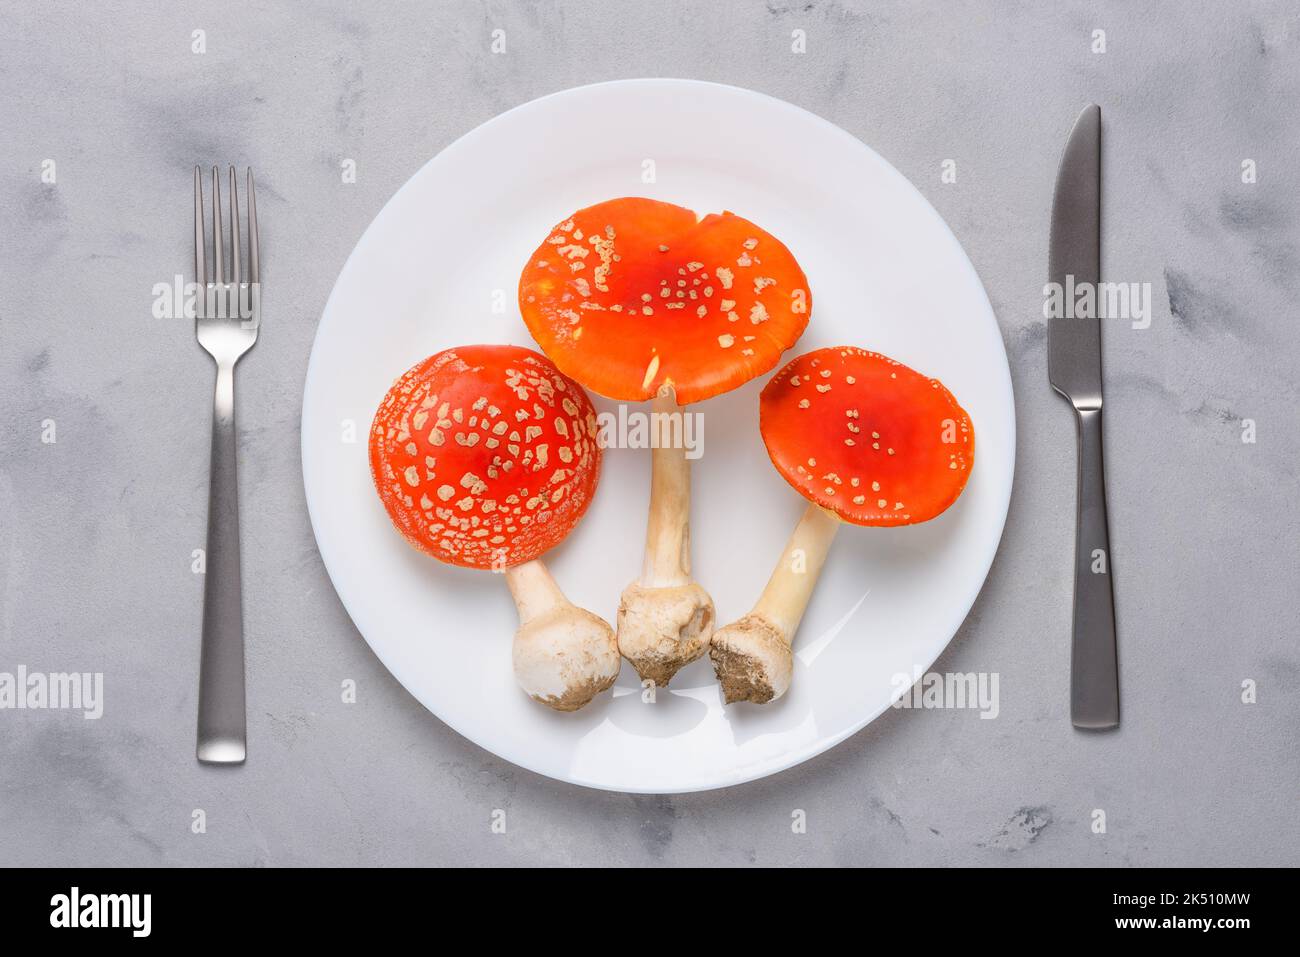 Amanita muscaria fliegen agarische giftige Pilze auf Teller mit Gabel und Messer Draufsicht. Verbrauch von halluzinogenen Pilzen Konzept Stockfoto